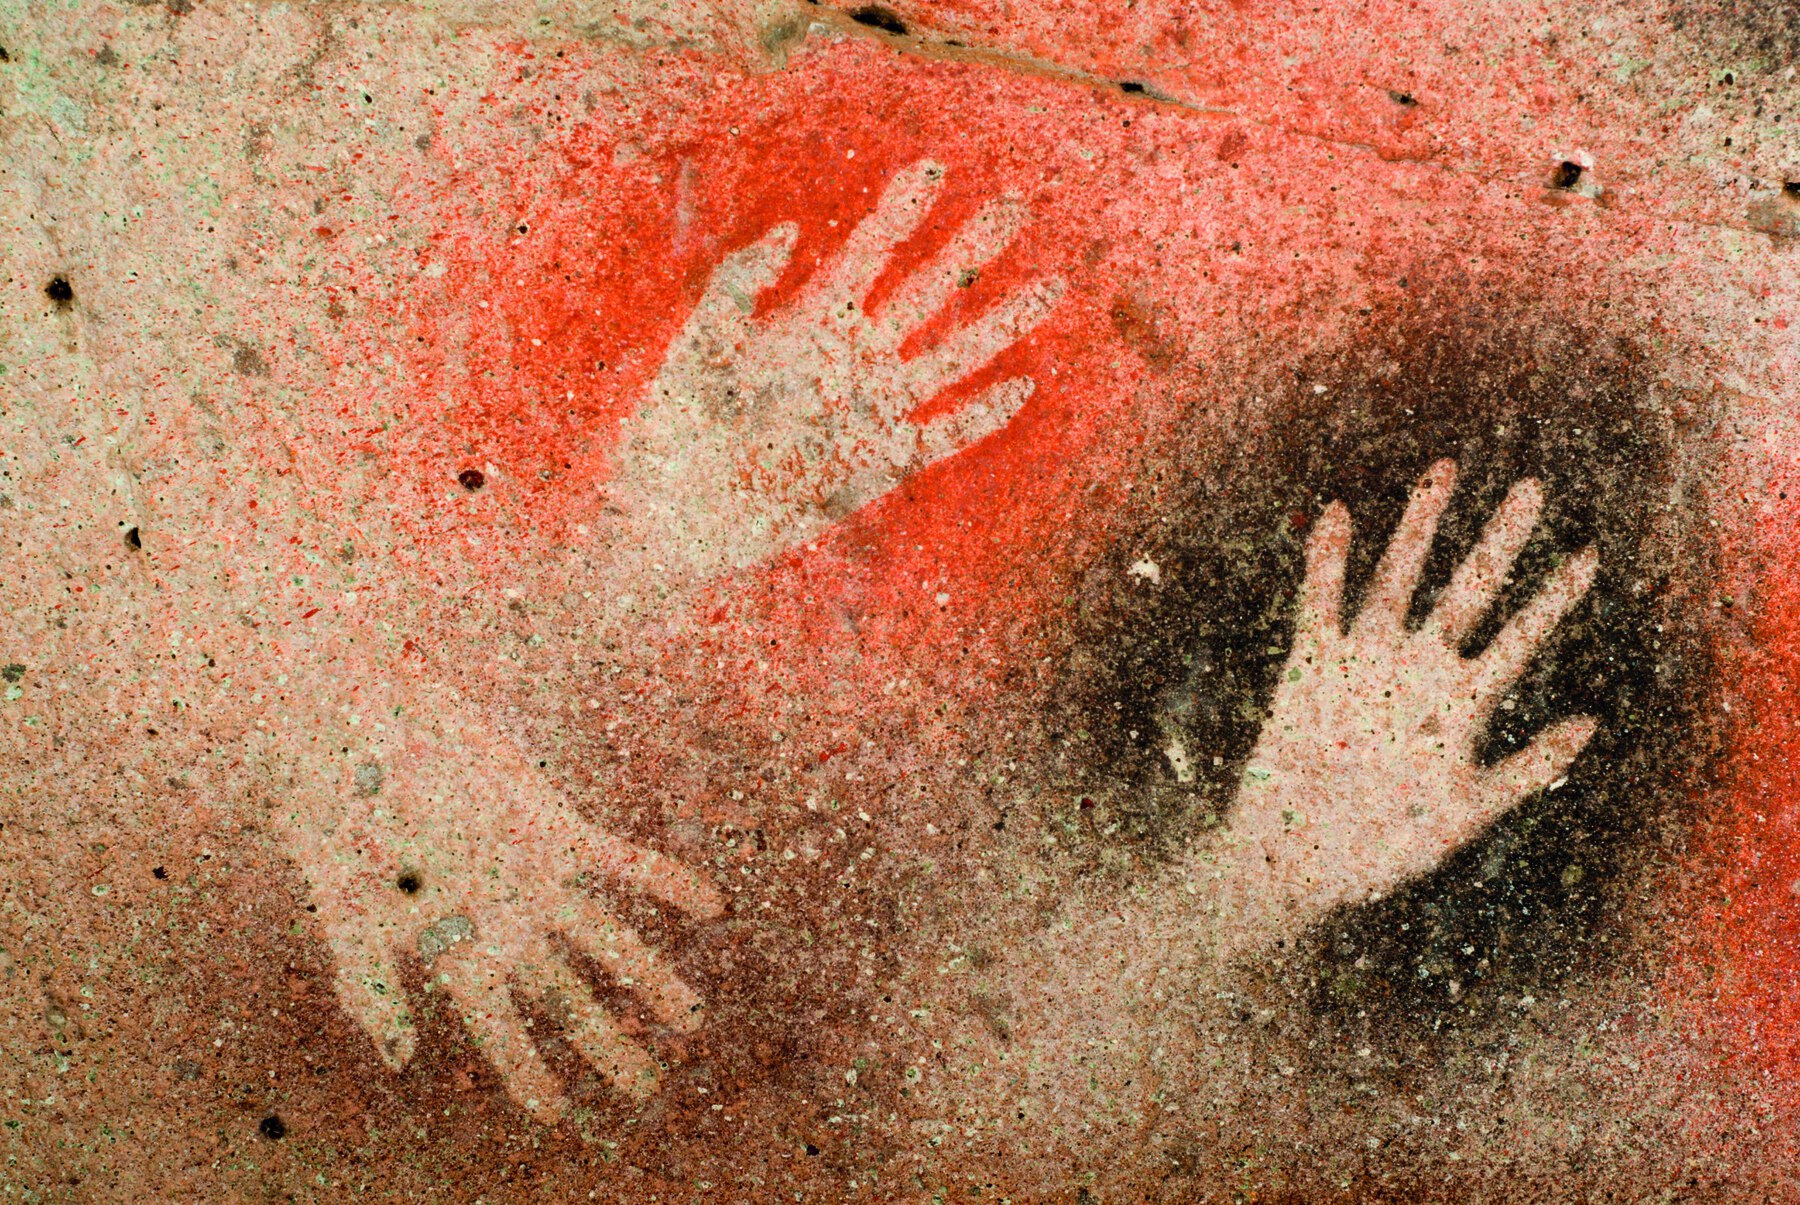 Fotografia. Pintura rupestre mostrando mãos humanas contornadas em tintas de tons de preto, laranja e marrom.